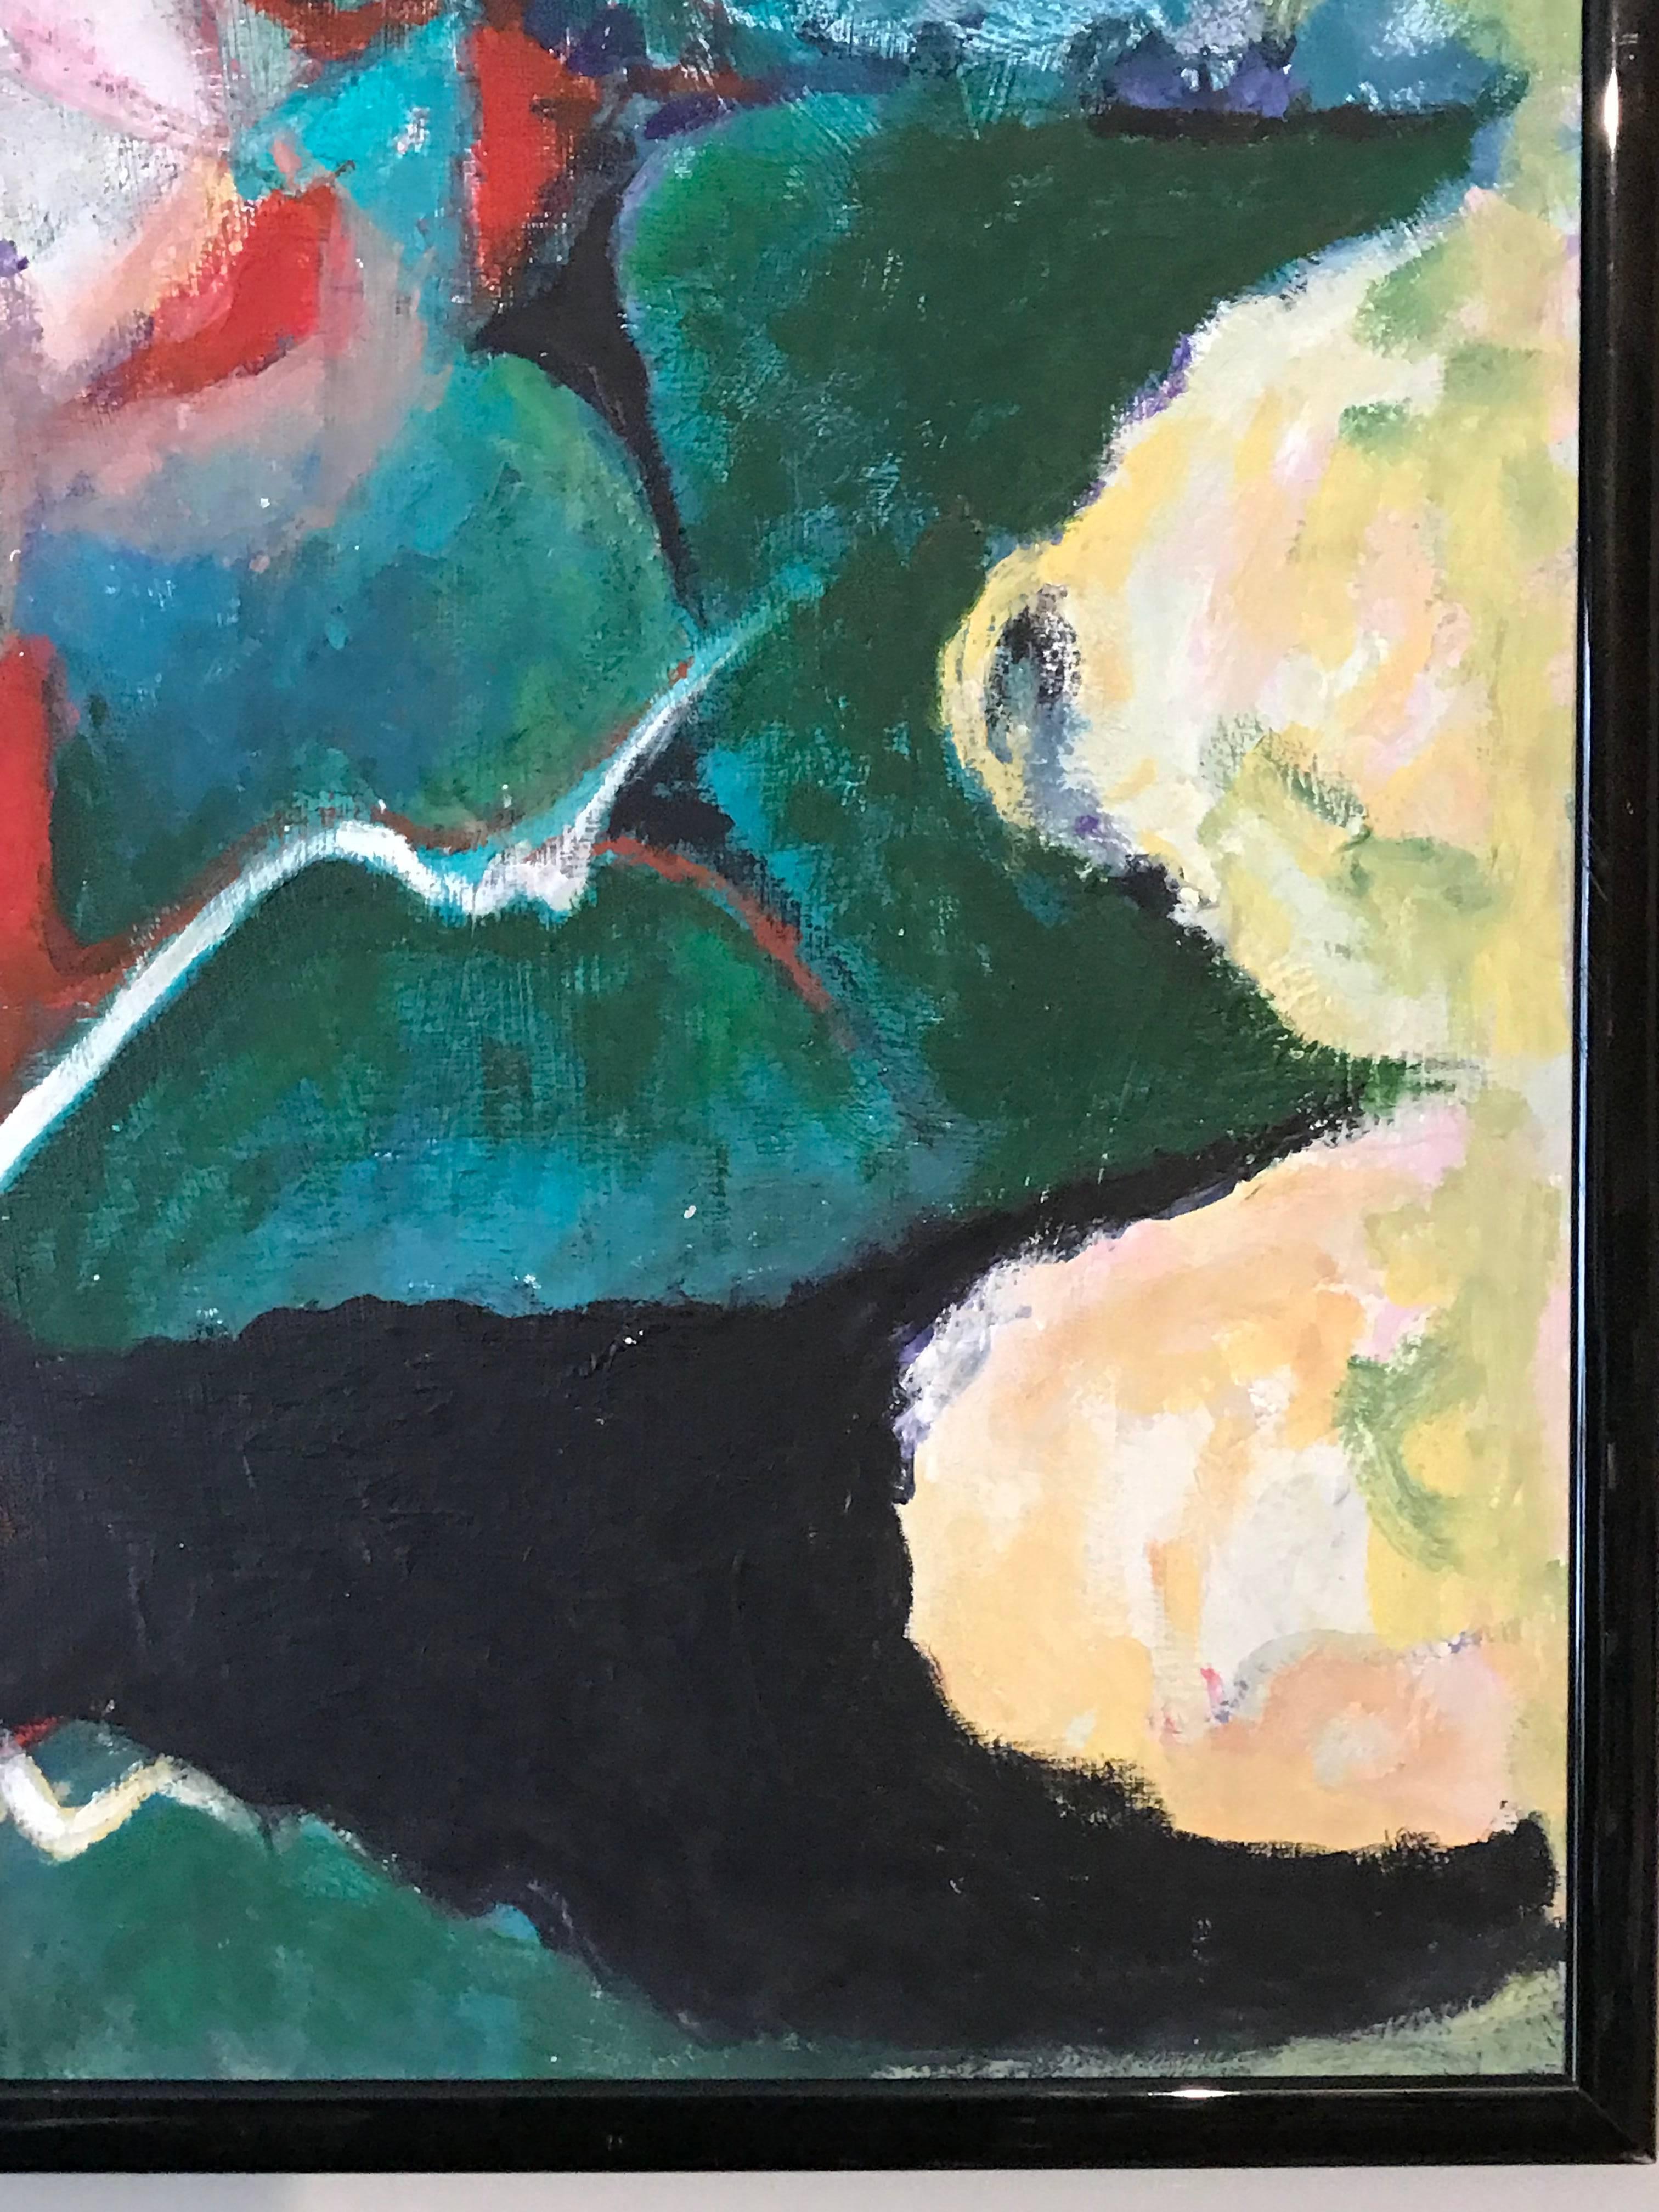 Expressionistische Komposition
von Armand Rottenberg (Französisch 1903-2000)
ölgemälde auf Karton, gerahmt
Provenienz: Nachlass des Künstlers

Gerahmt 37 x 28 Zoll

Beeindruckendes kubistisches Originalgemälde des französischen abstrakten Künstlers